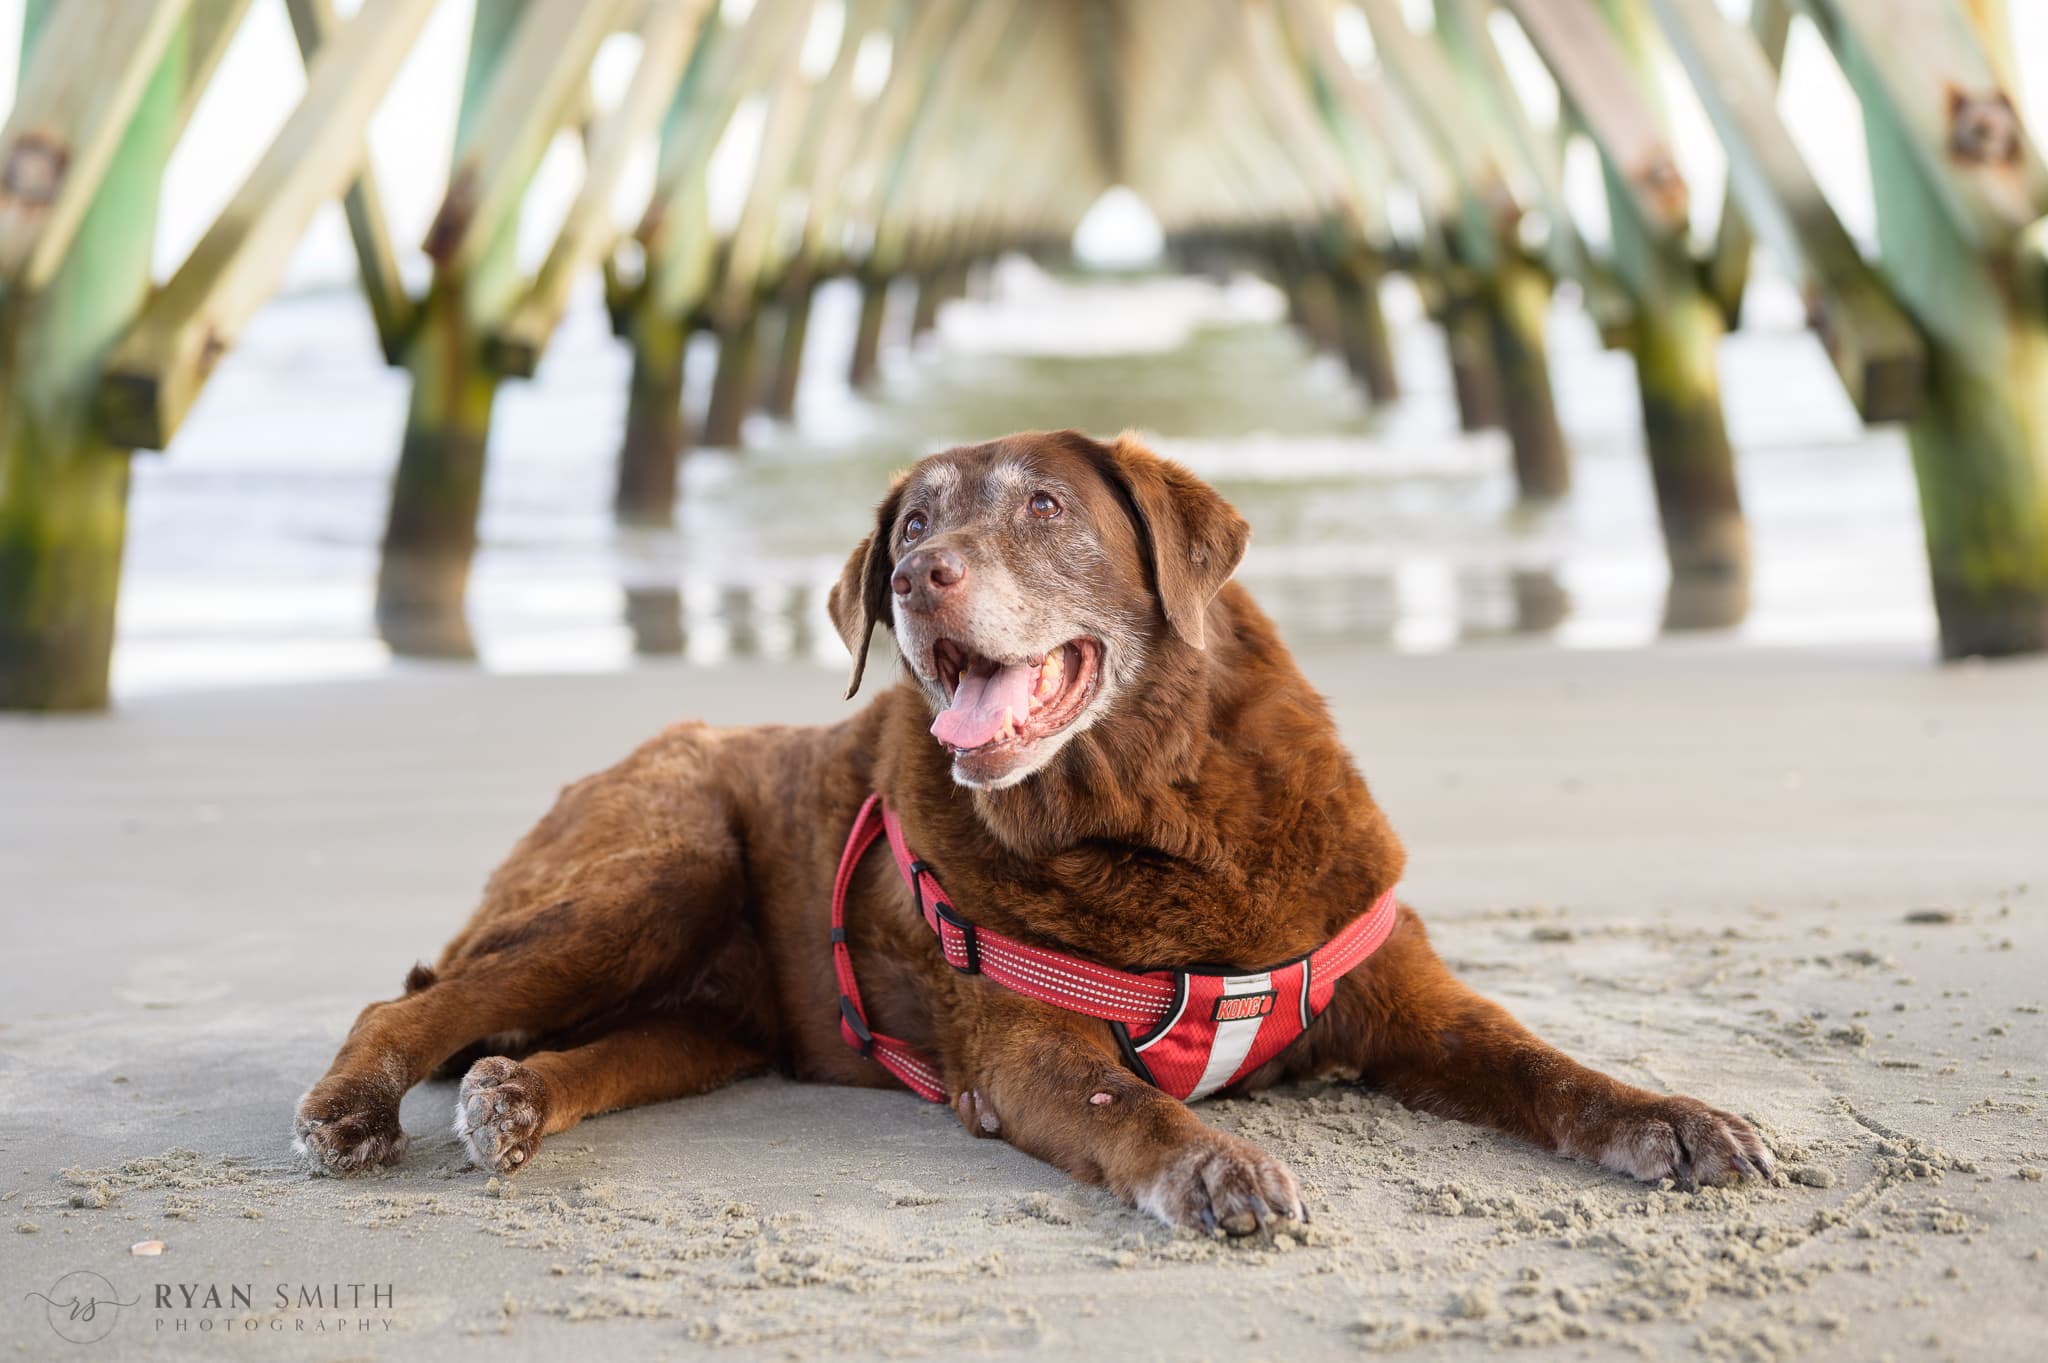 Old dog's last trip to the beach - Cherry Grove Beach